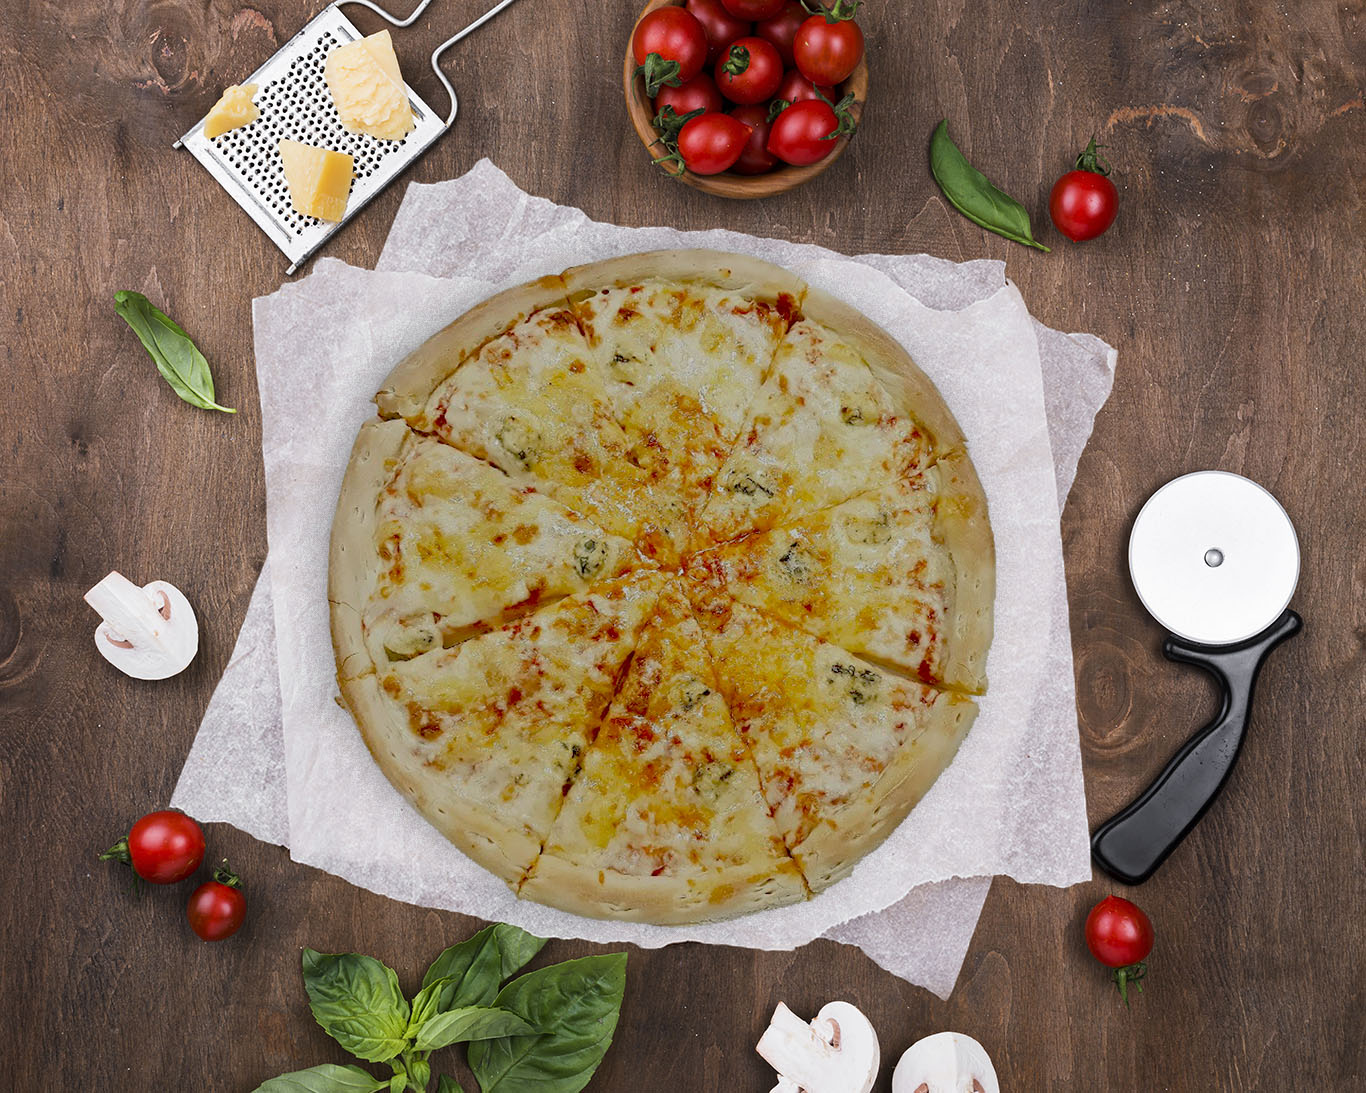 камеди заказ пиццы четыре сыра смотреть онлайн фото 97